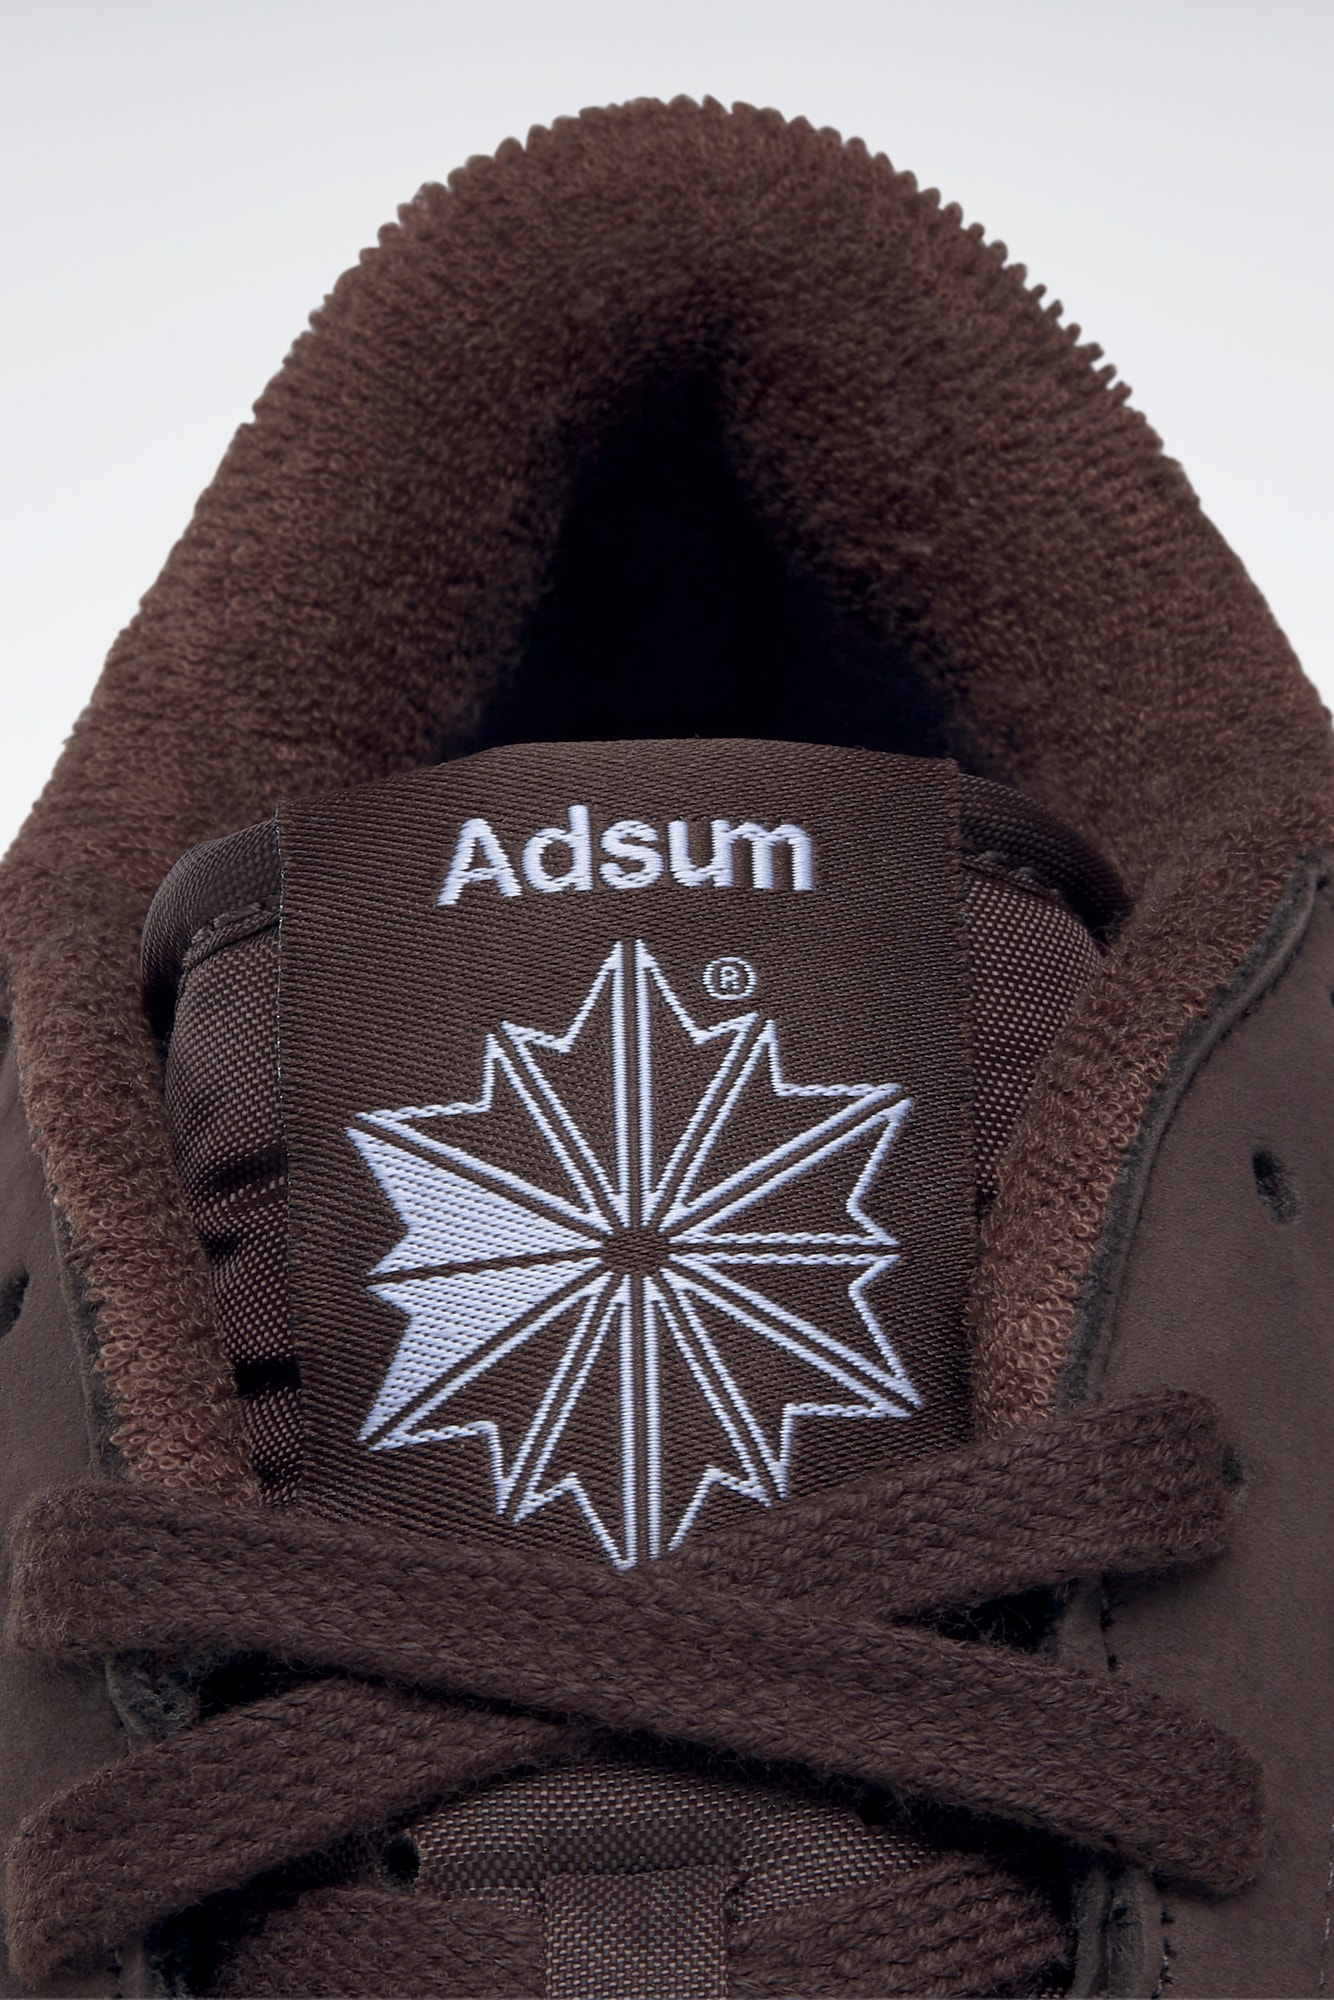 Reebok x Adsum Club C Mid II 联名复古板鞋发售